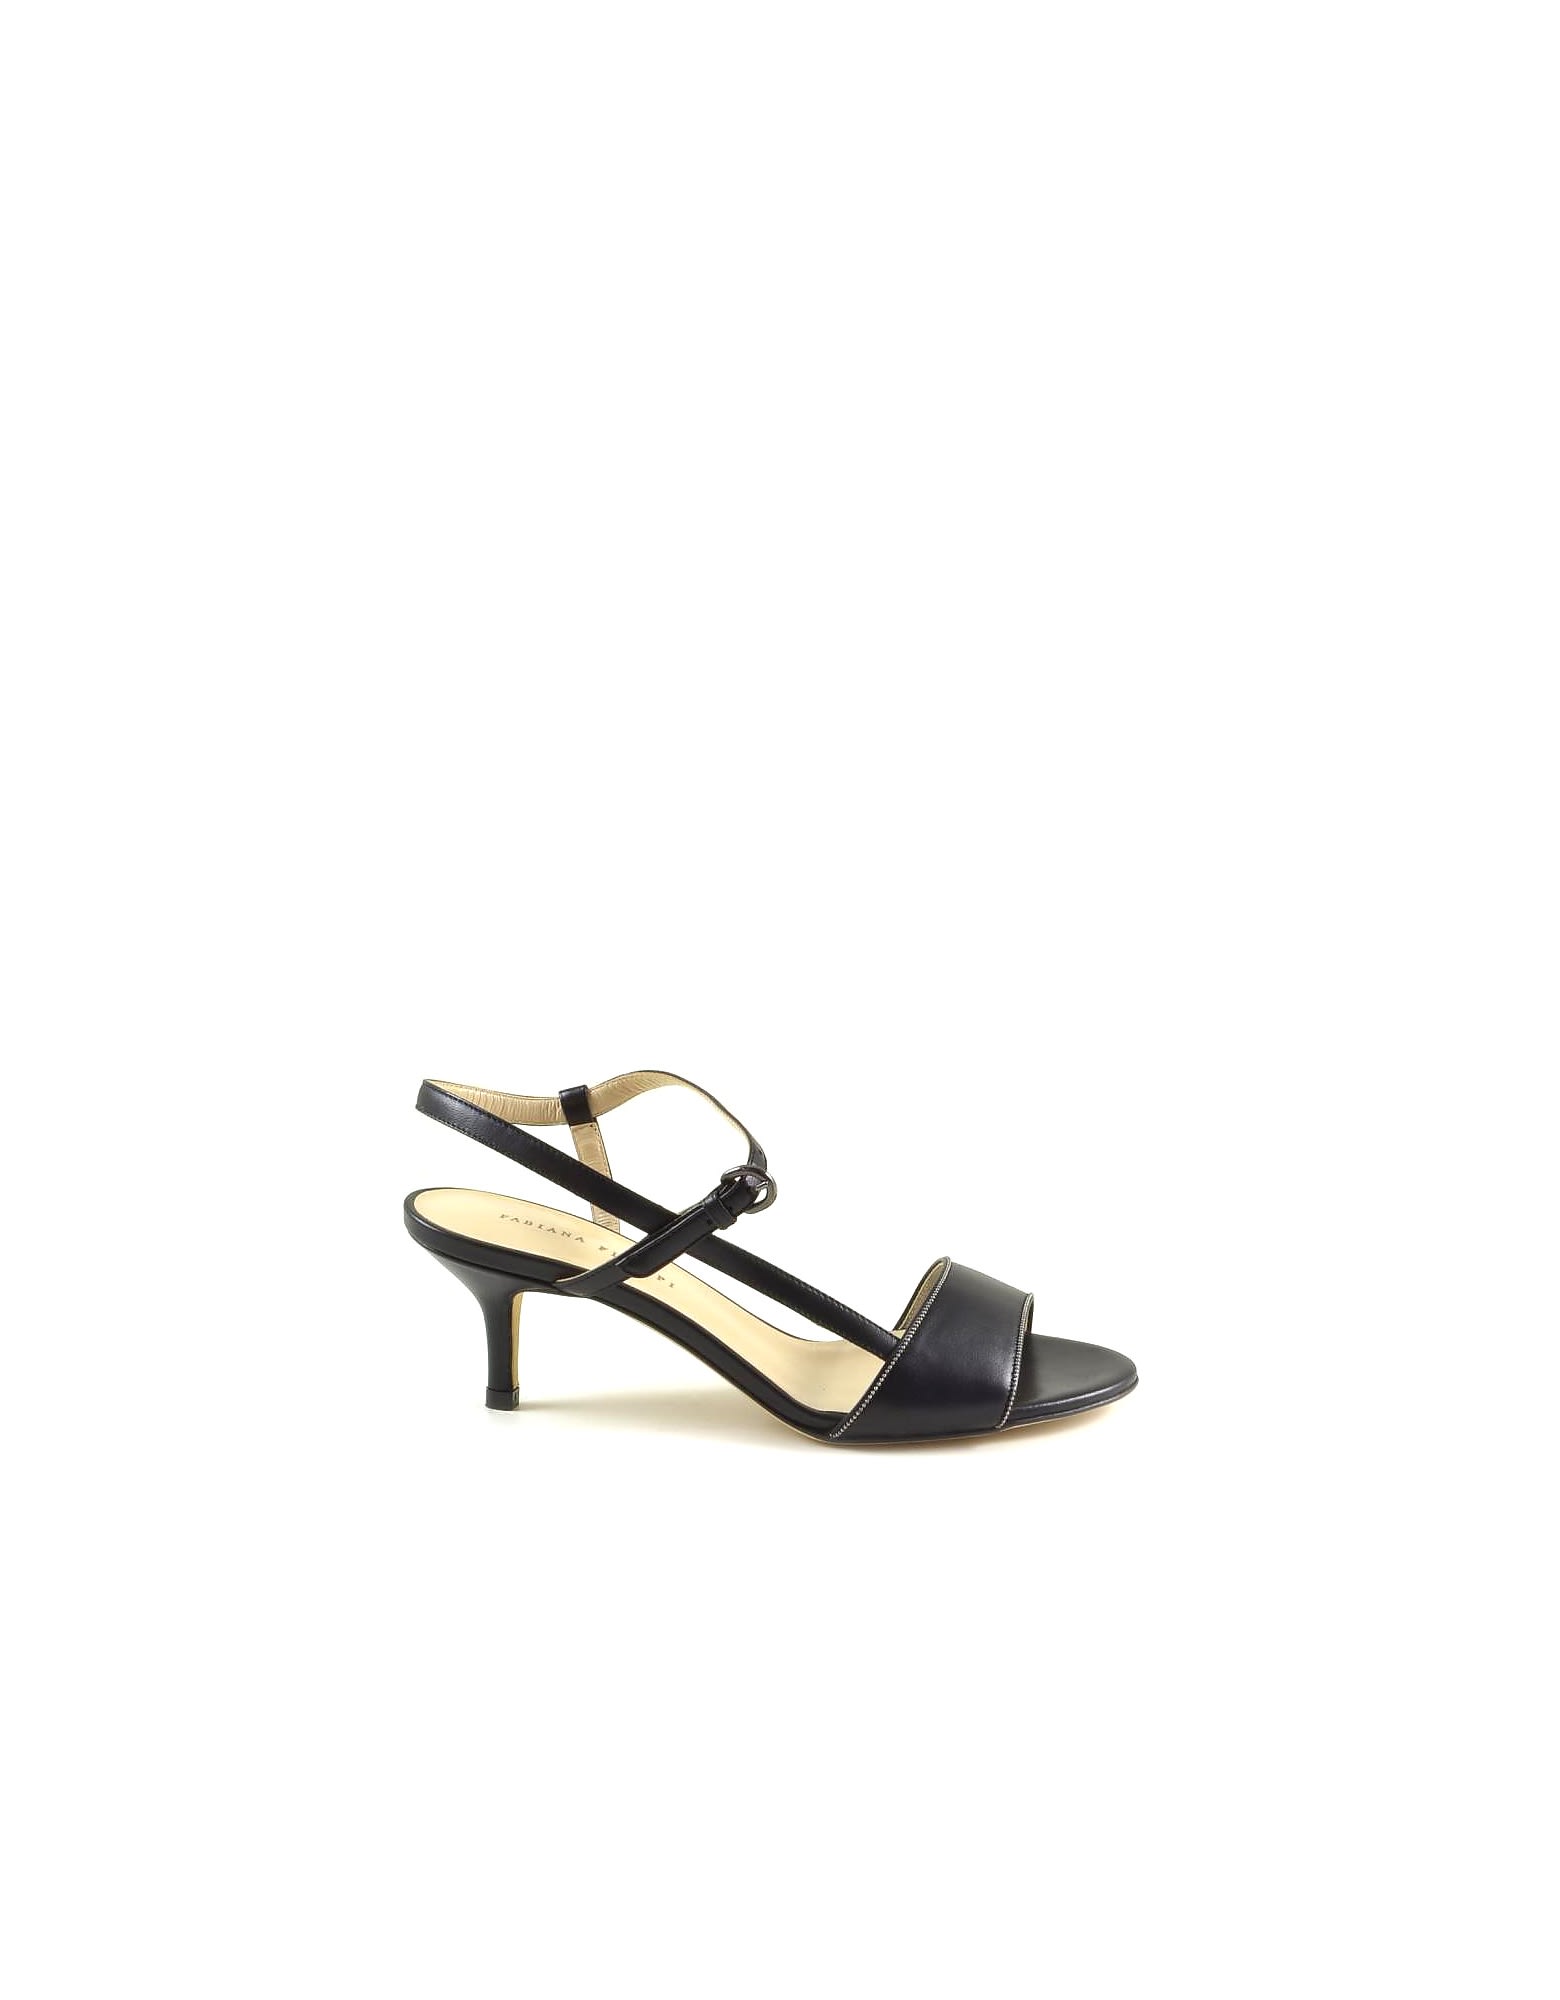 Fabiana Filippi Black Leather Mid-heel Sandals